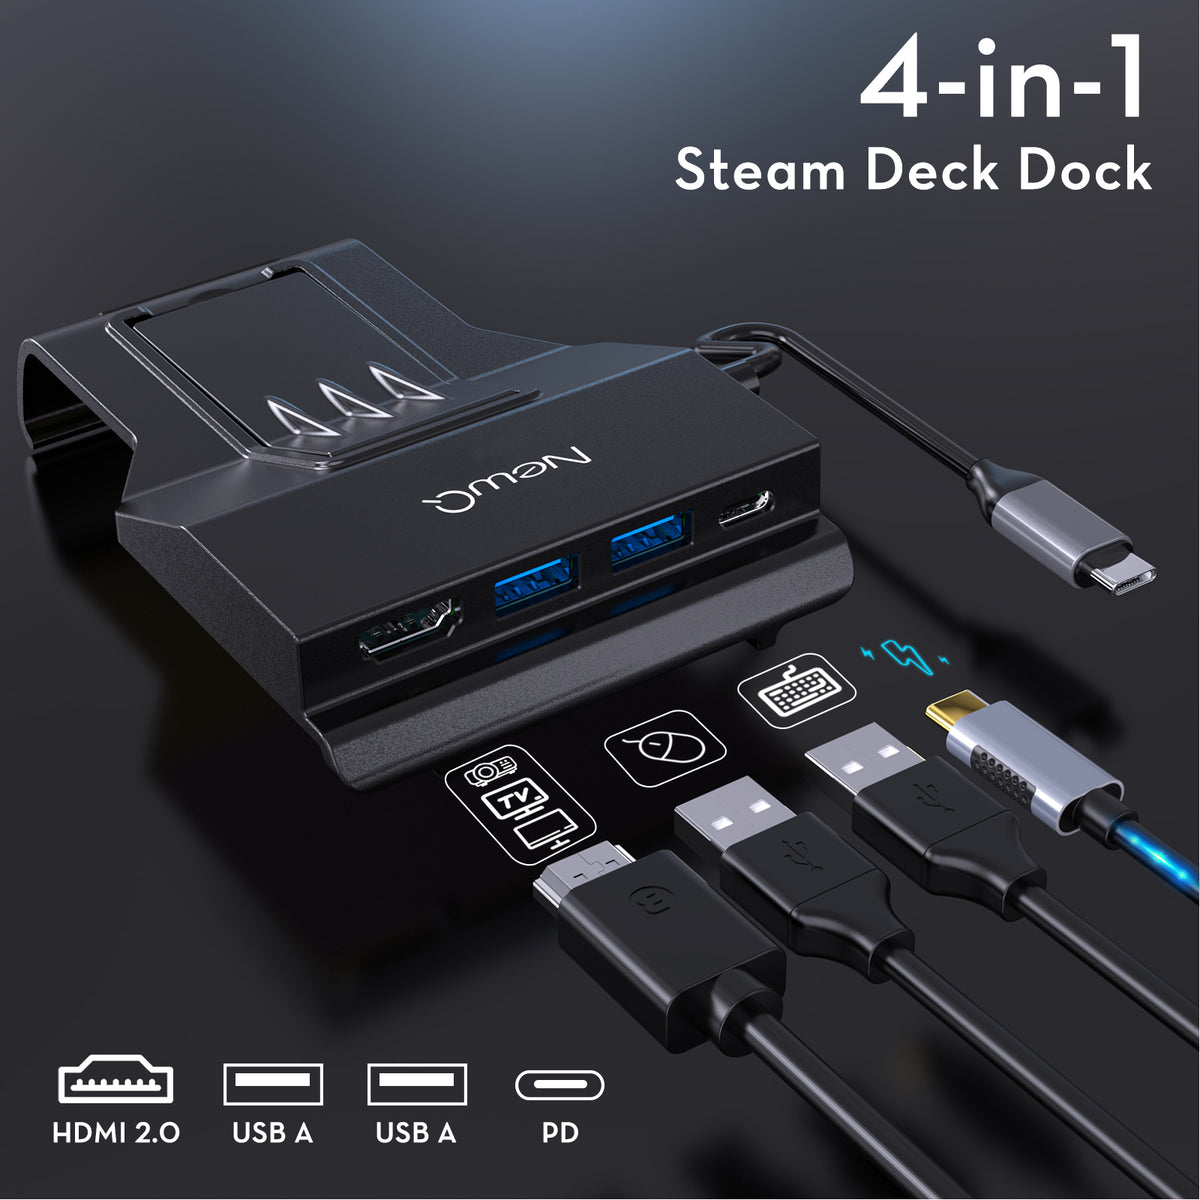 NewQ Steam Deck Dock,Ultra-Slim 4-in-1 Portable Steam Deck Docking